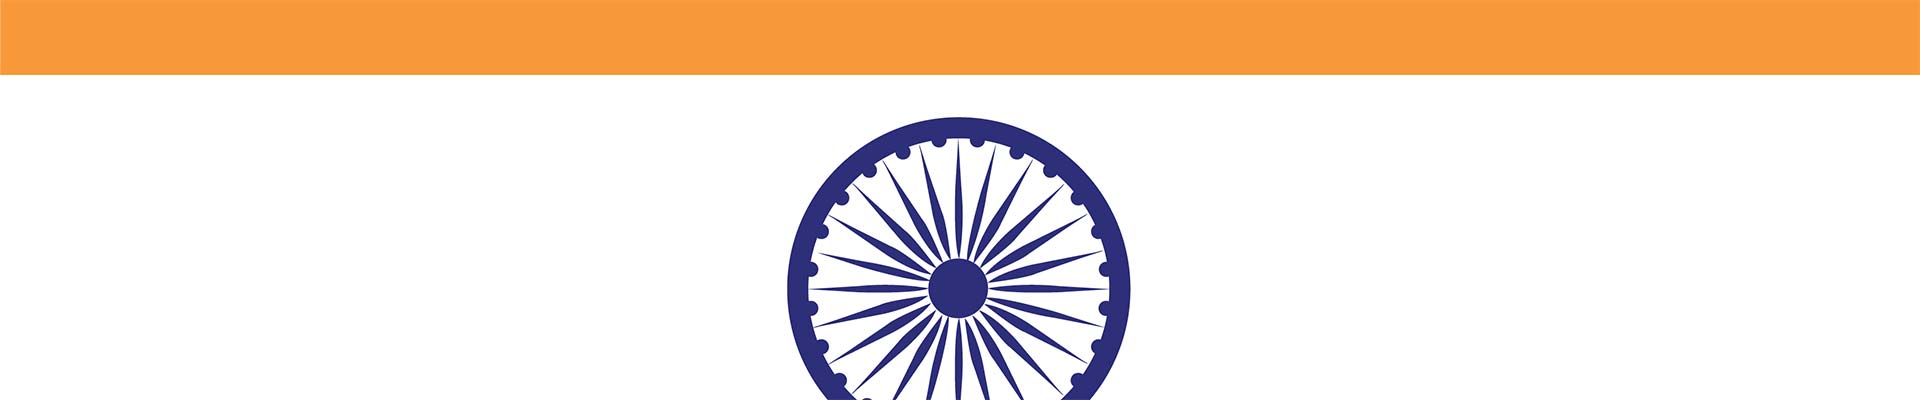 قطعة من العلم الهندي